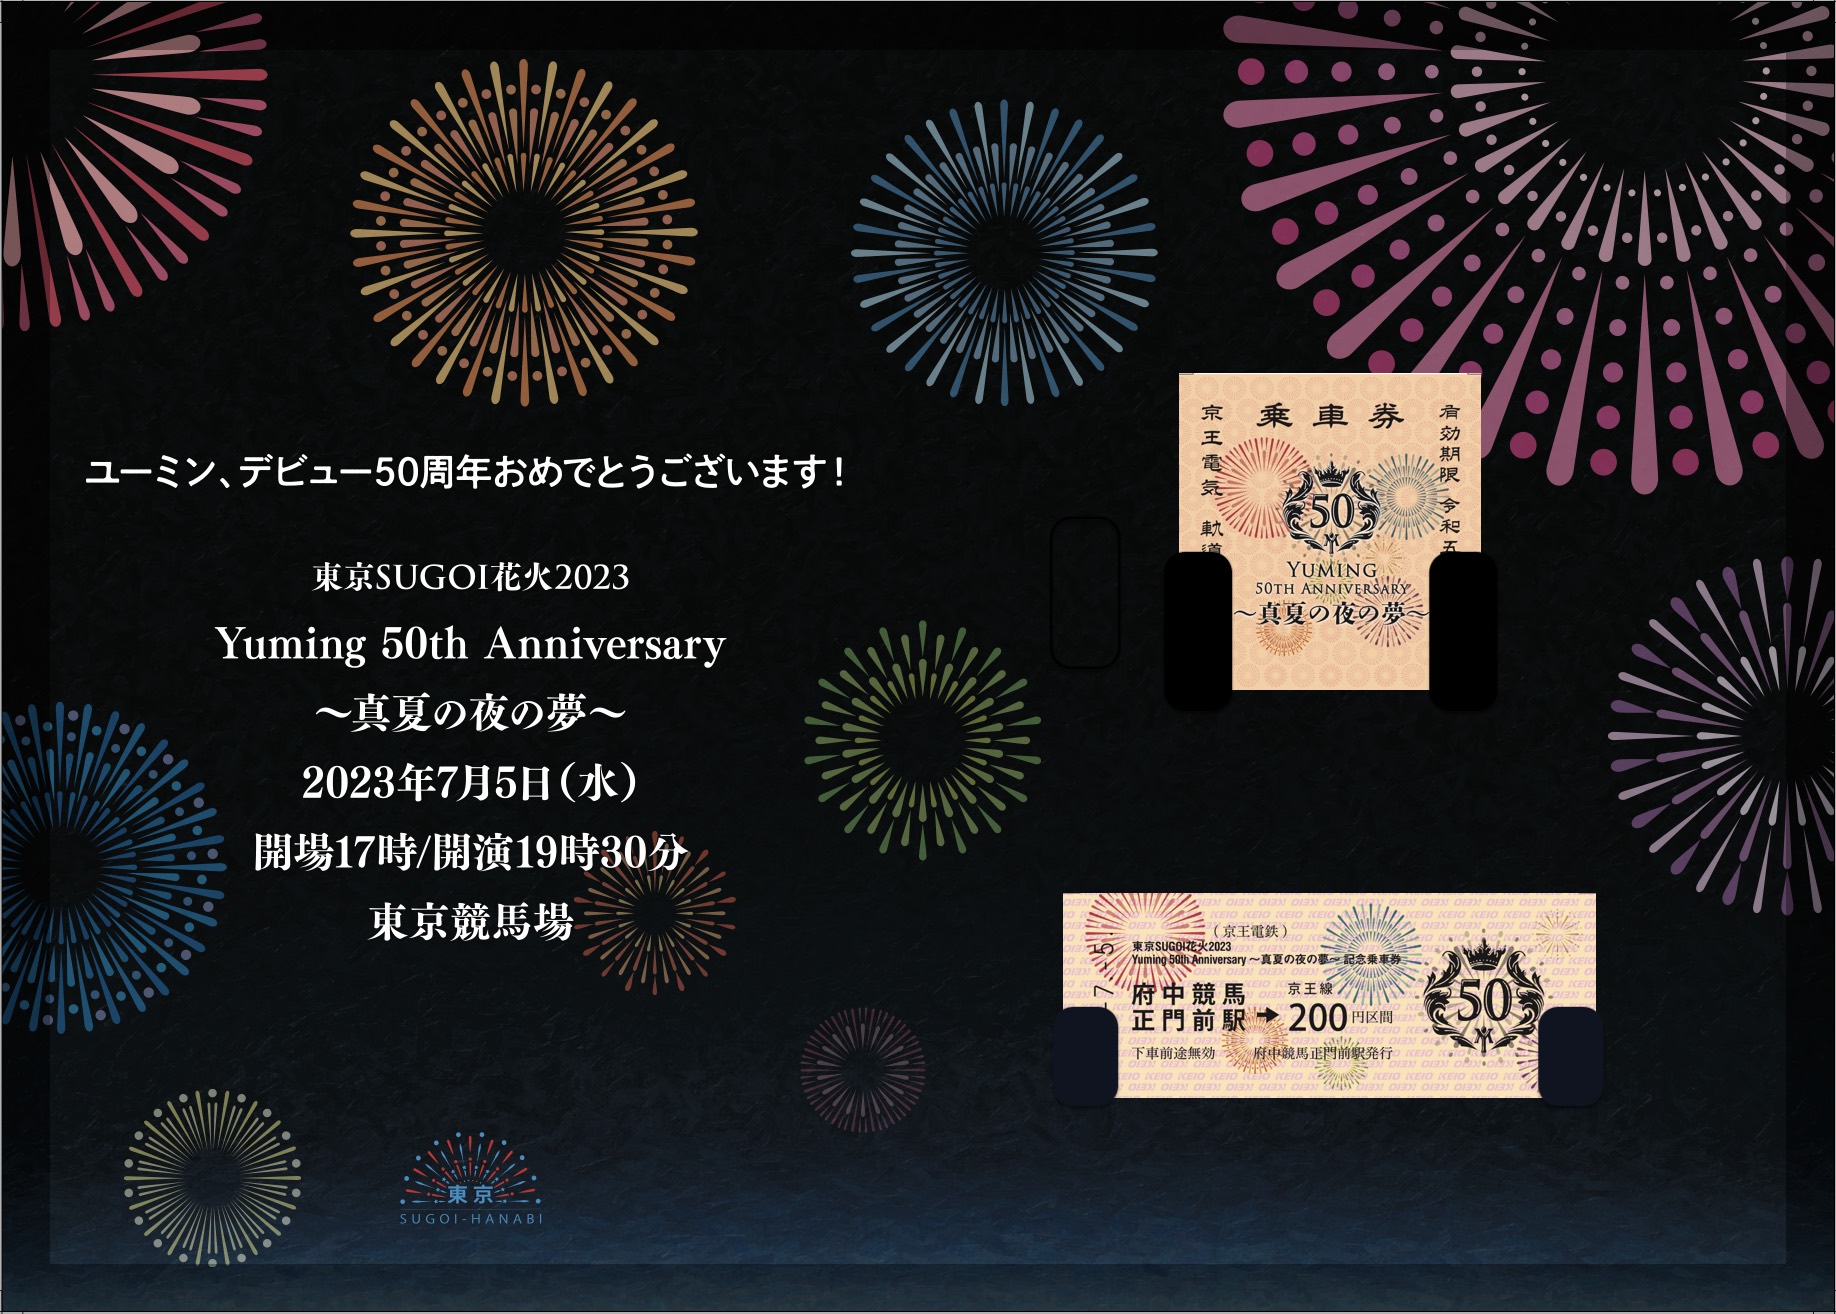 東京SUGOI花火2023 「Yuming 50th Anniversary 〜真夏の夜の夢